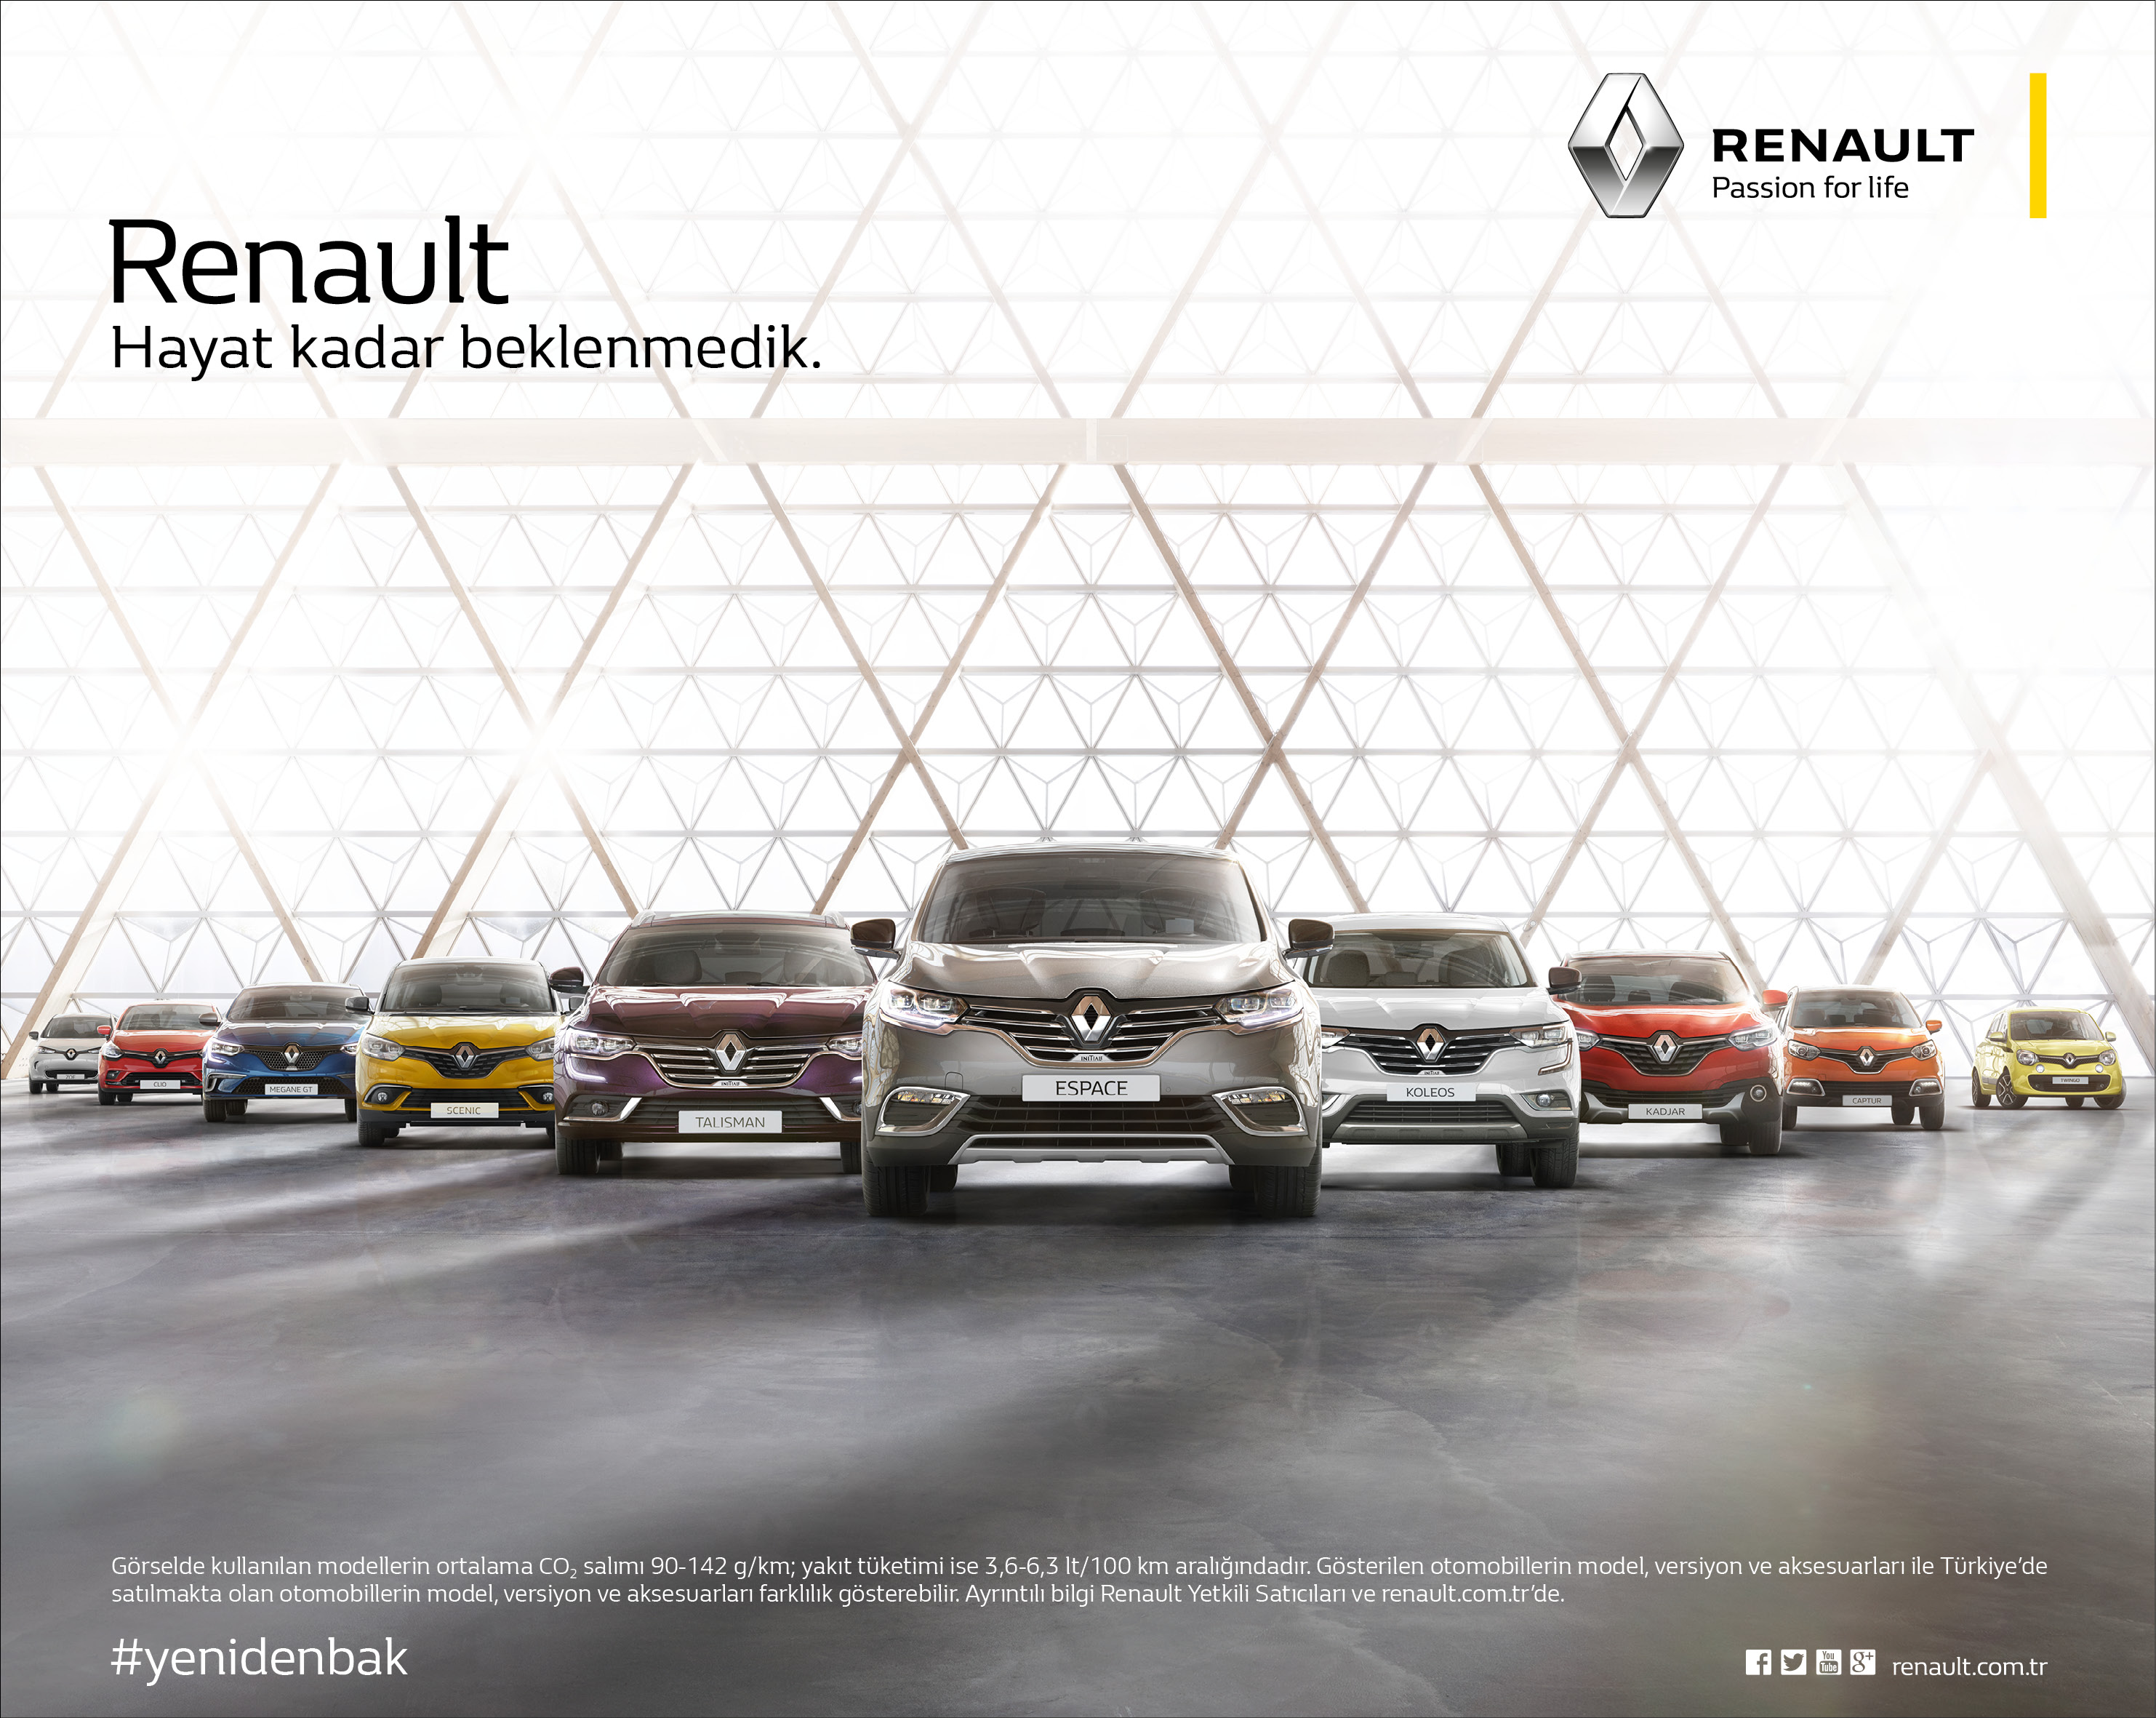 Renault много машин